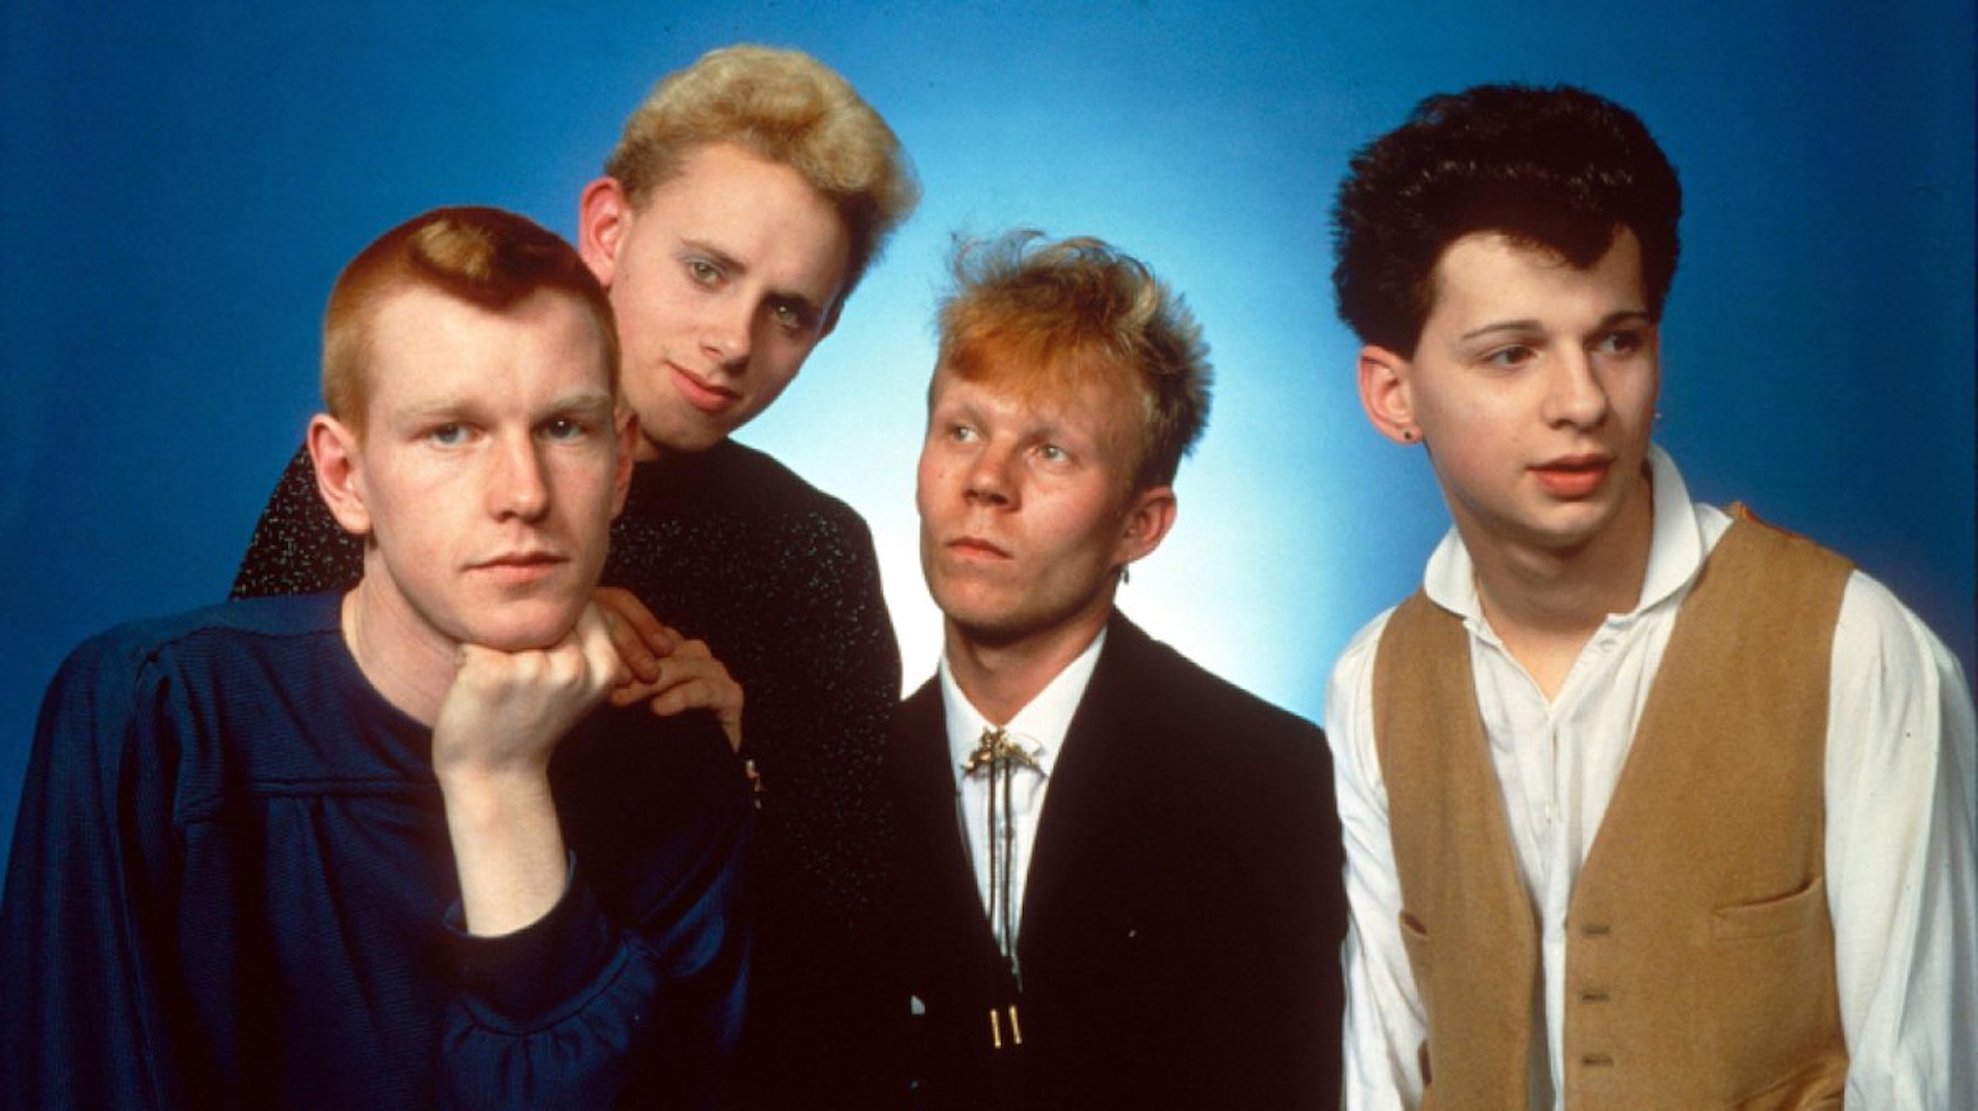 Σαράντα χρόνια κλείνουν σήμερα από την κυκλοφορία του “Speak & Spell” των Depeche Mode